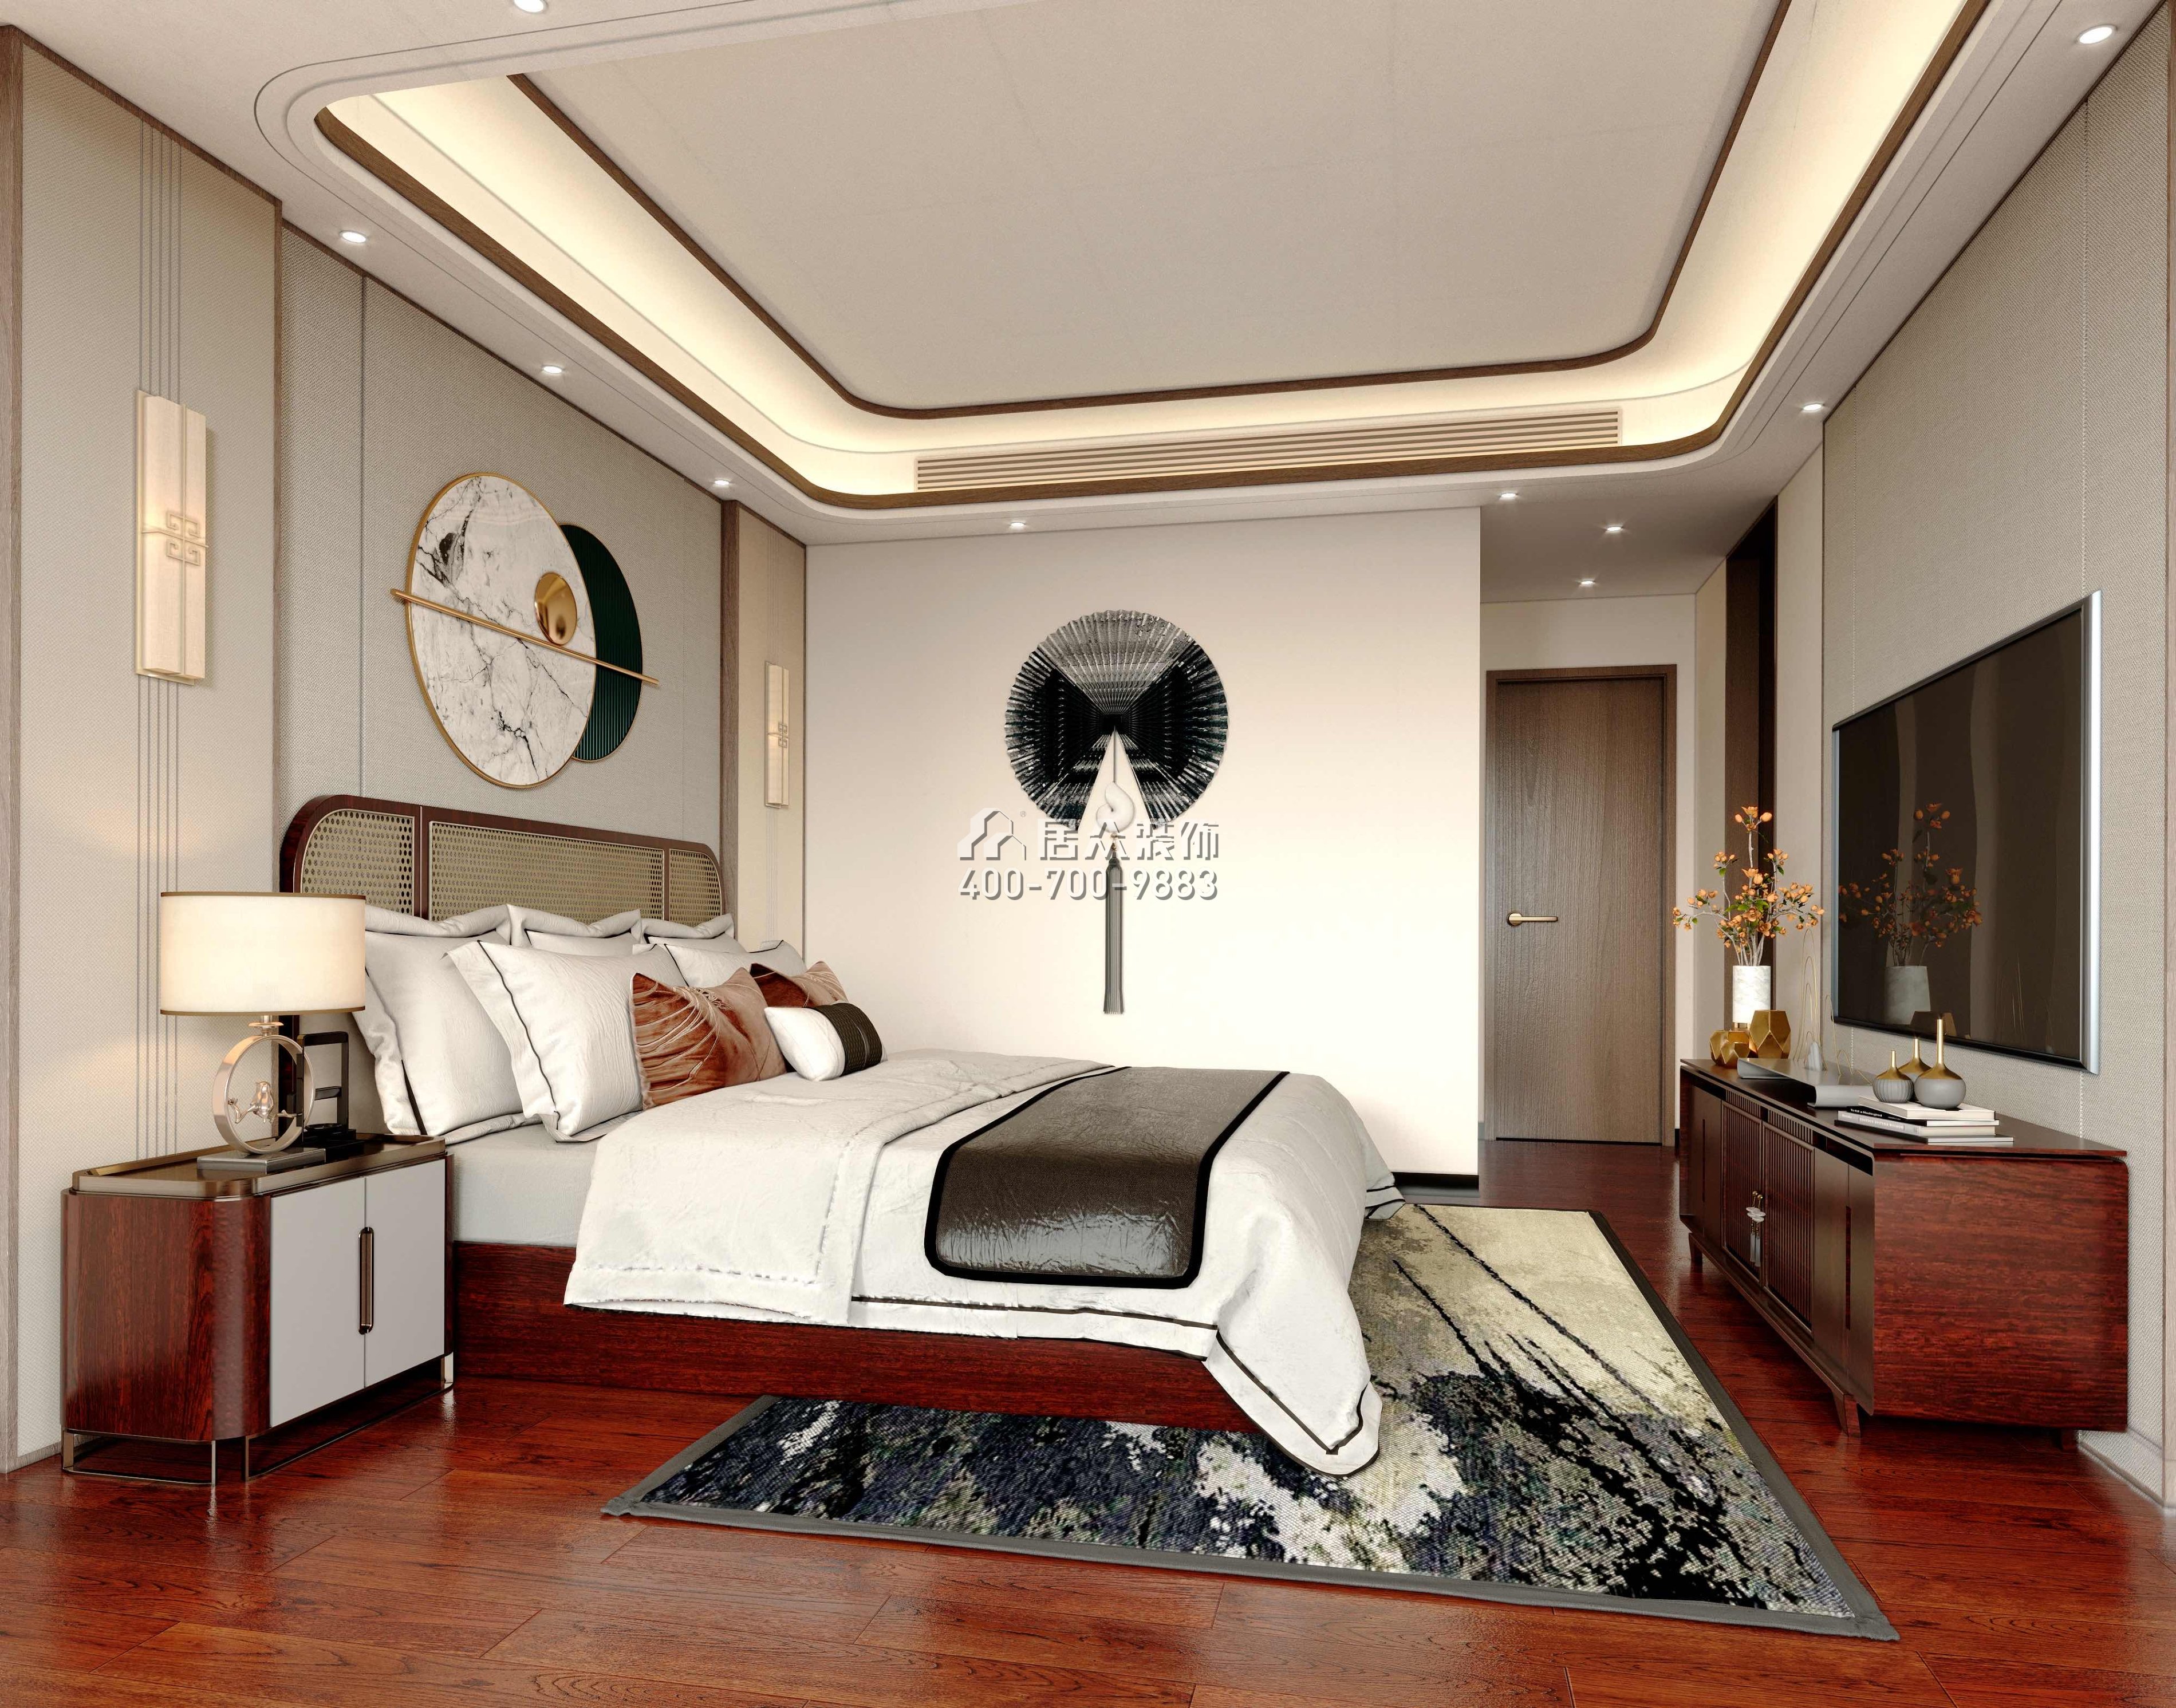 光華園176平方米中式風格平層戶型臥室裝修效果圖